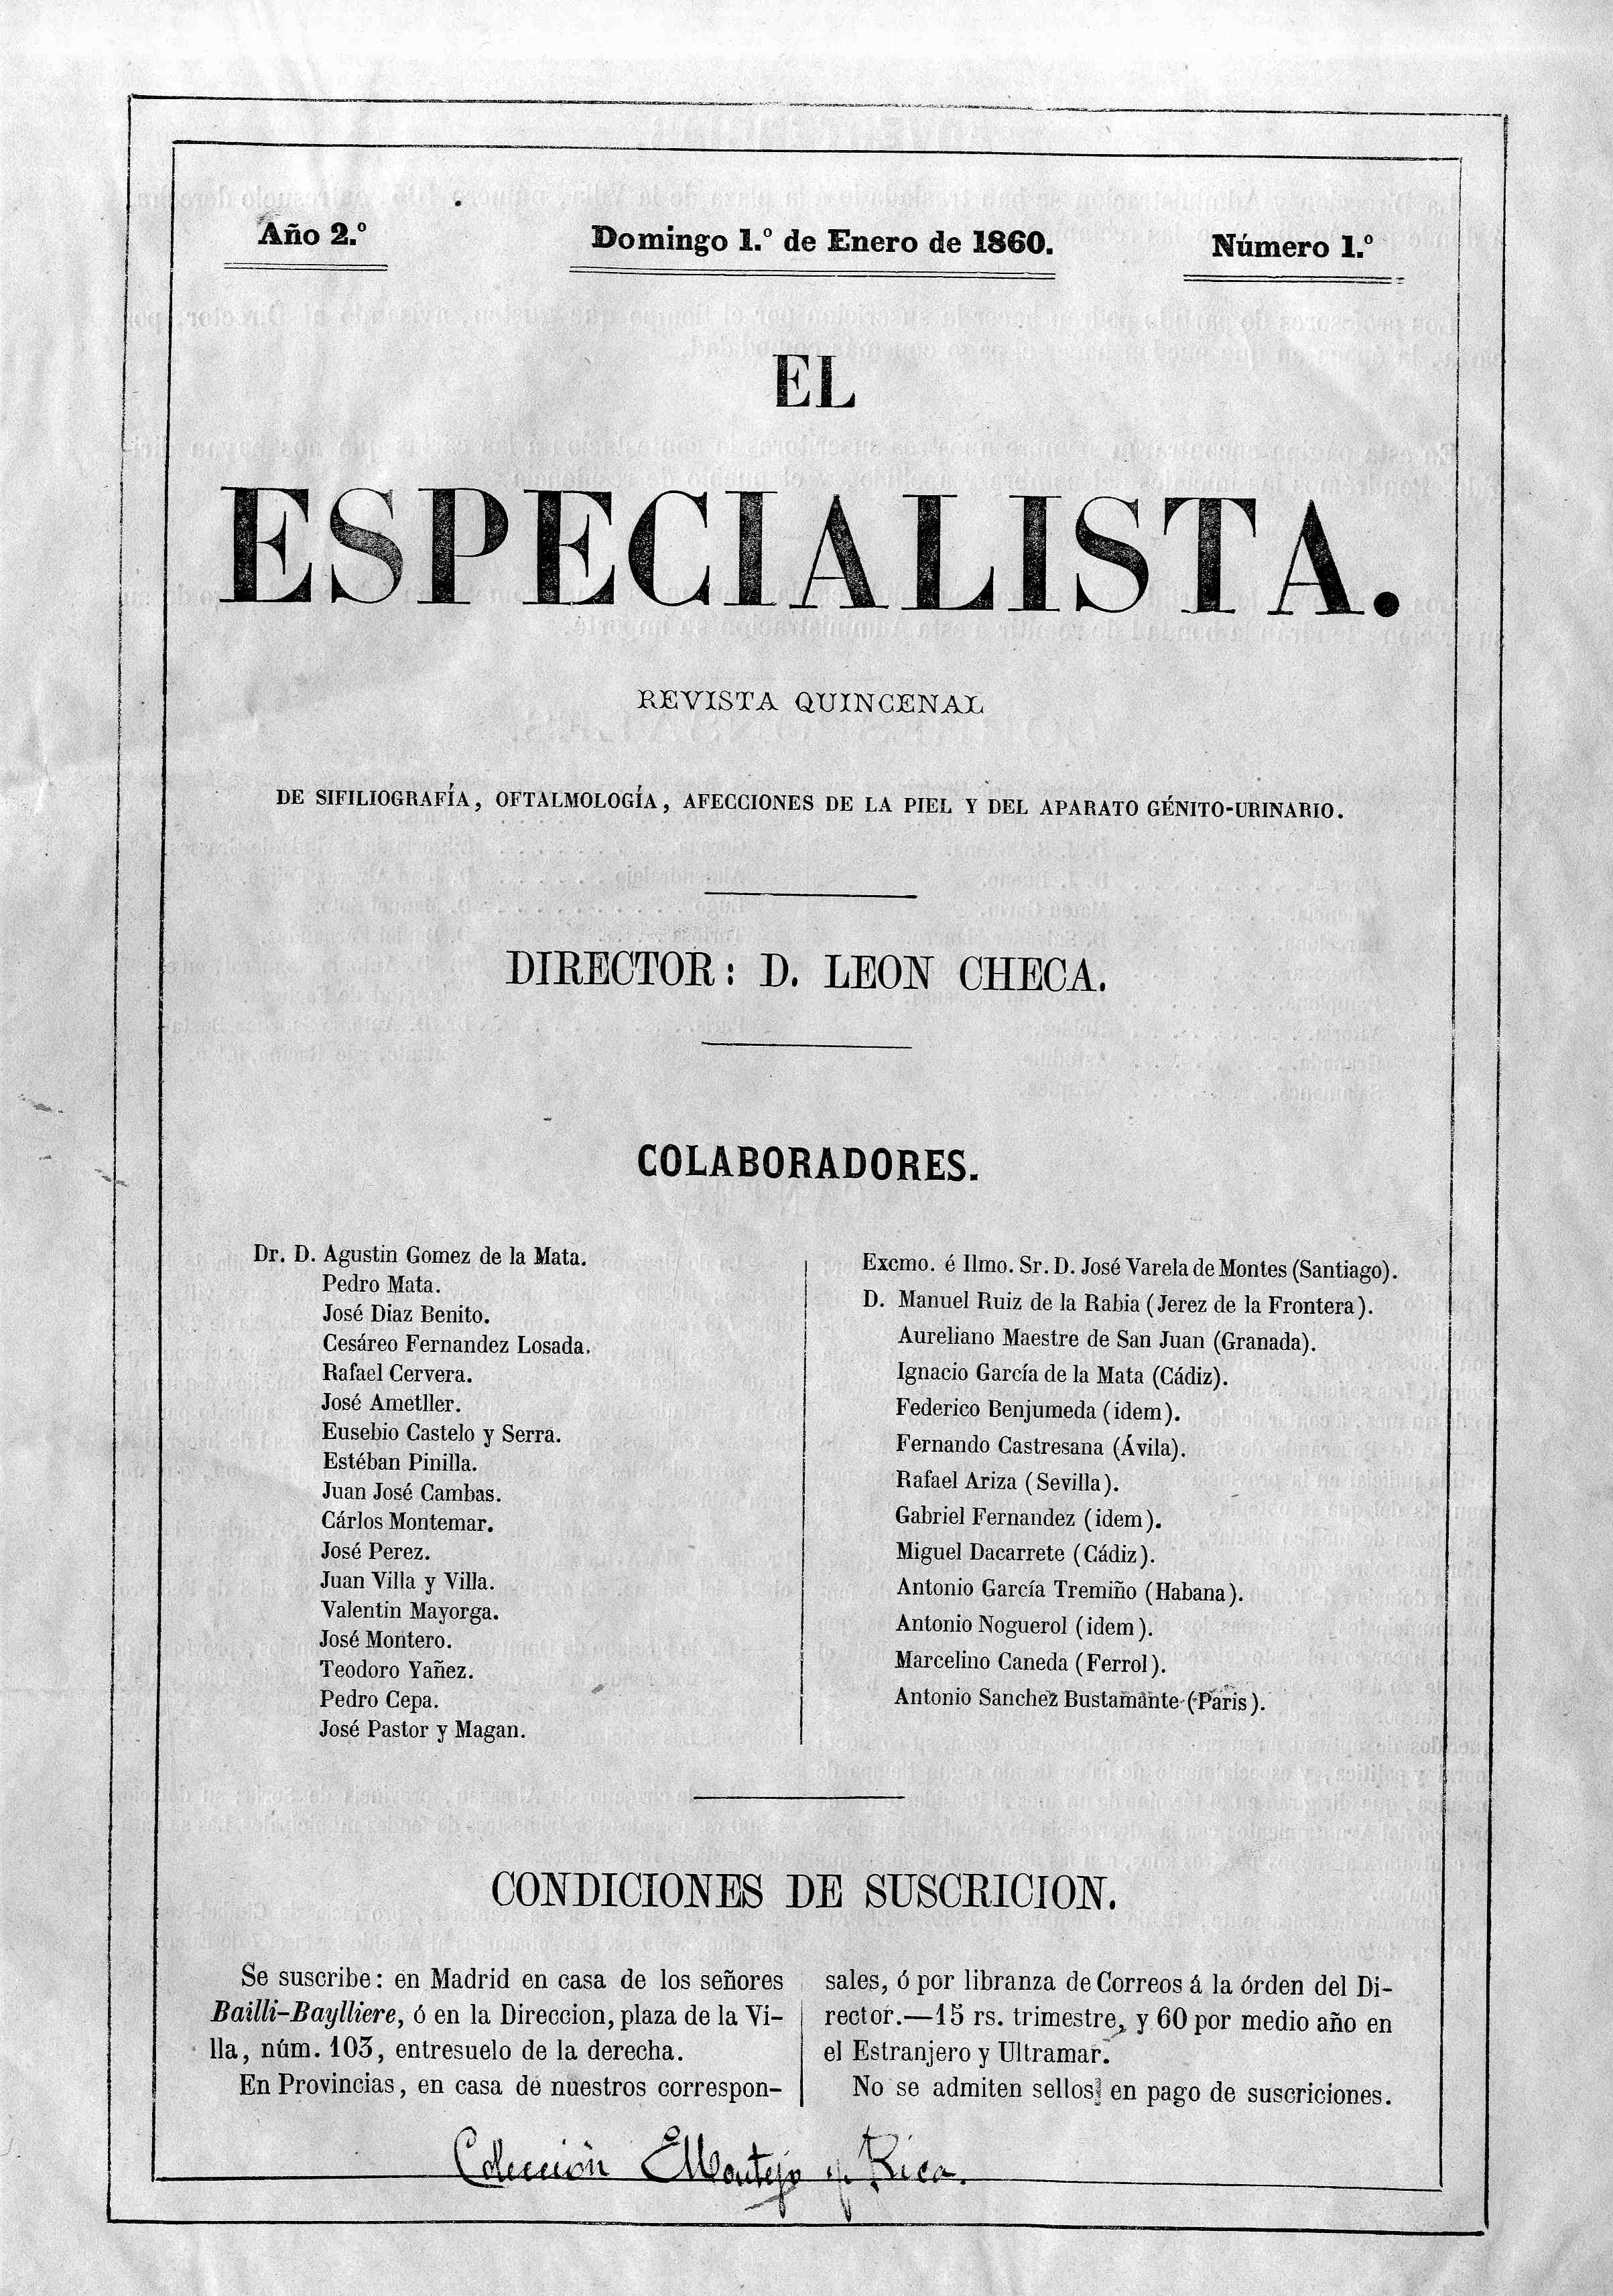 El especialista (Madrid), Año 2, 2 (1860)